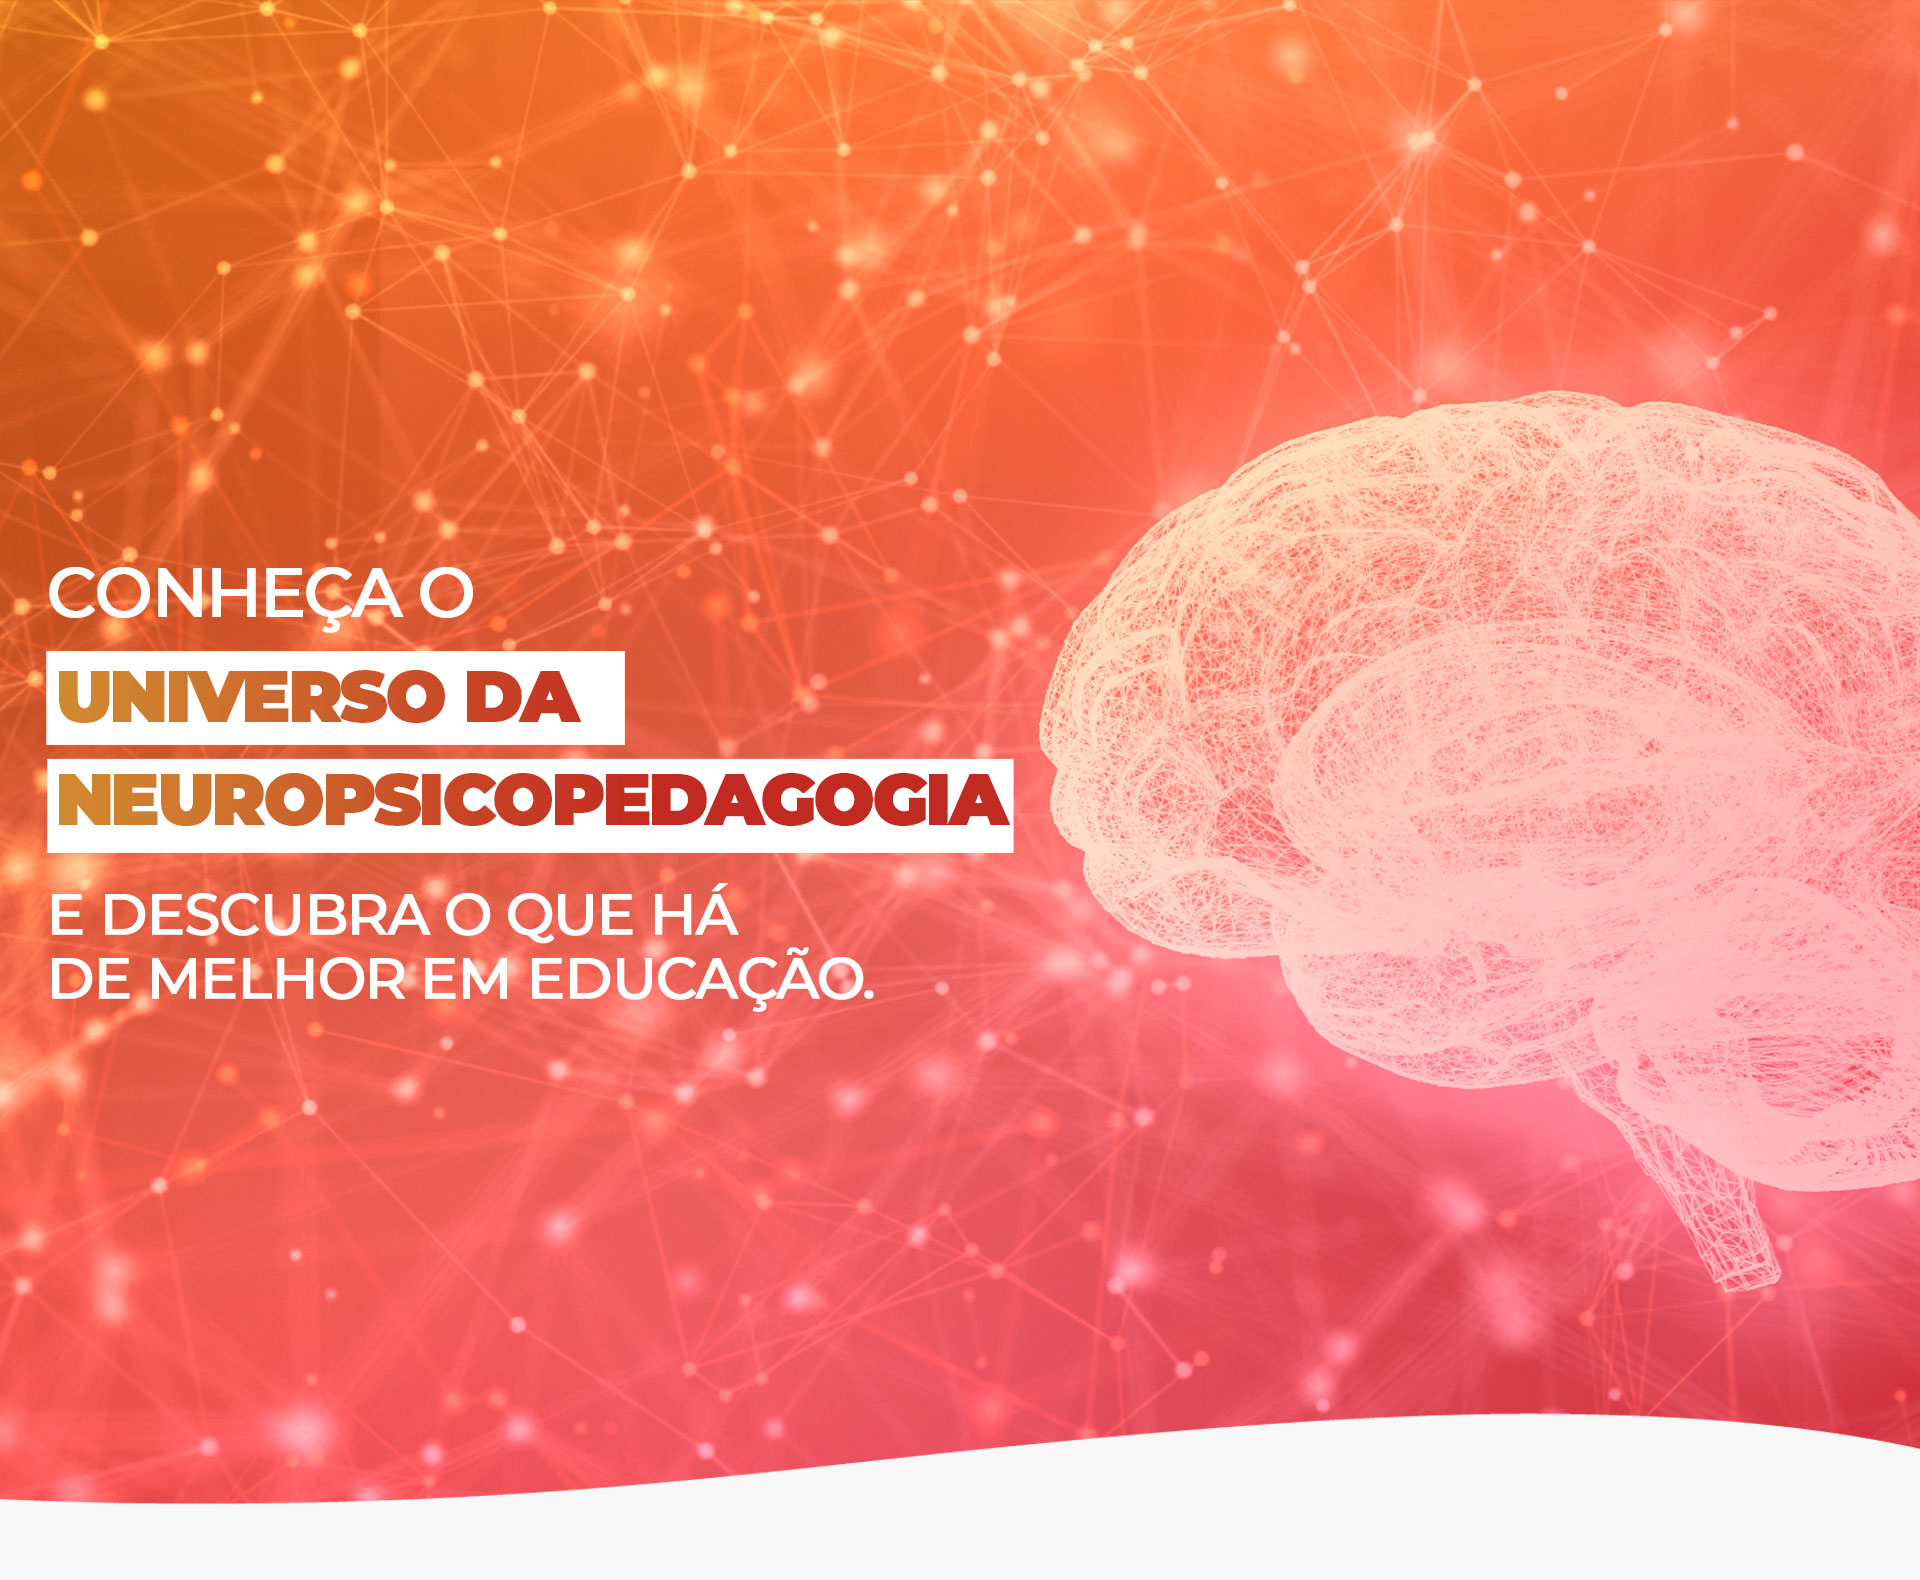 Fundo degrade do laranja para o vermelho, ao lado esquerdo a frase: Conheça o universo da neuropsicopedagogia e descubra o que há de melhor em educação e ao lado direito a imagem de um cérebro.